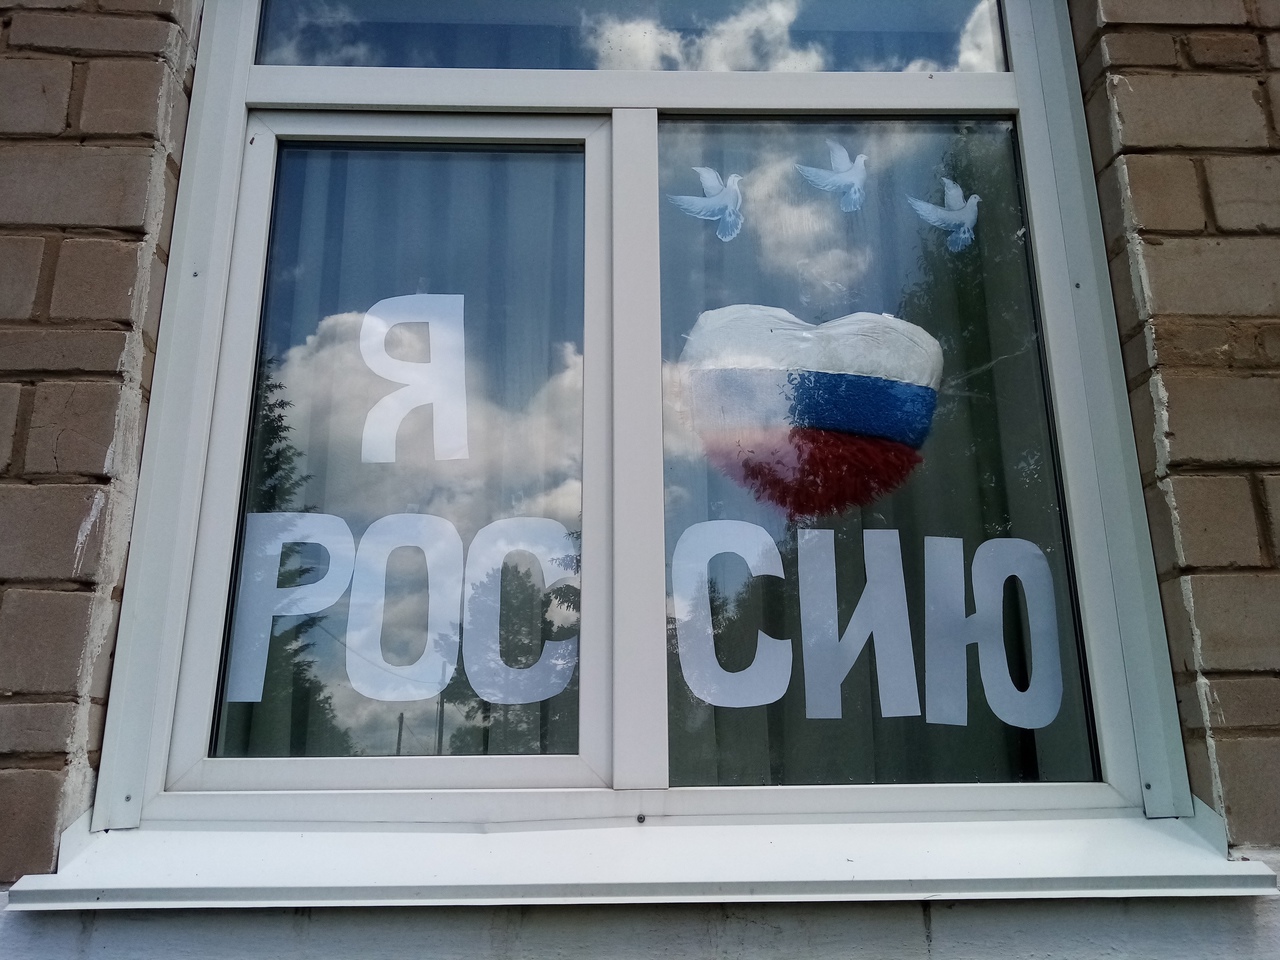 окна день россии